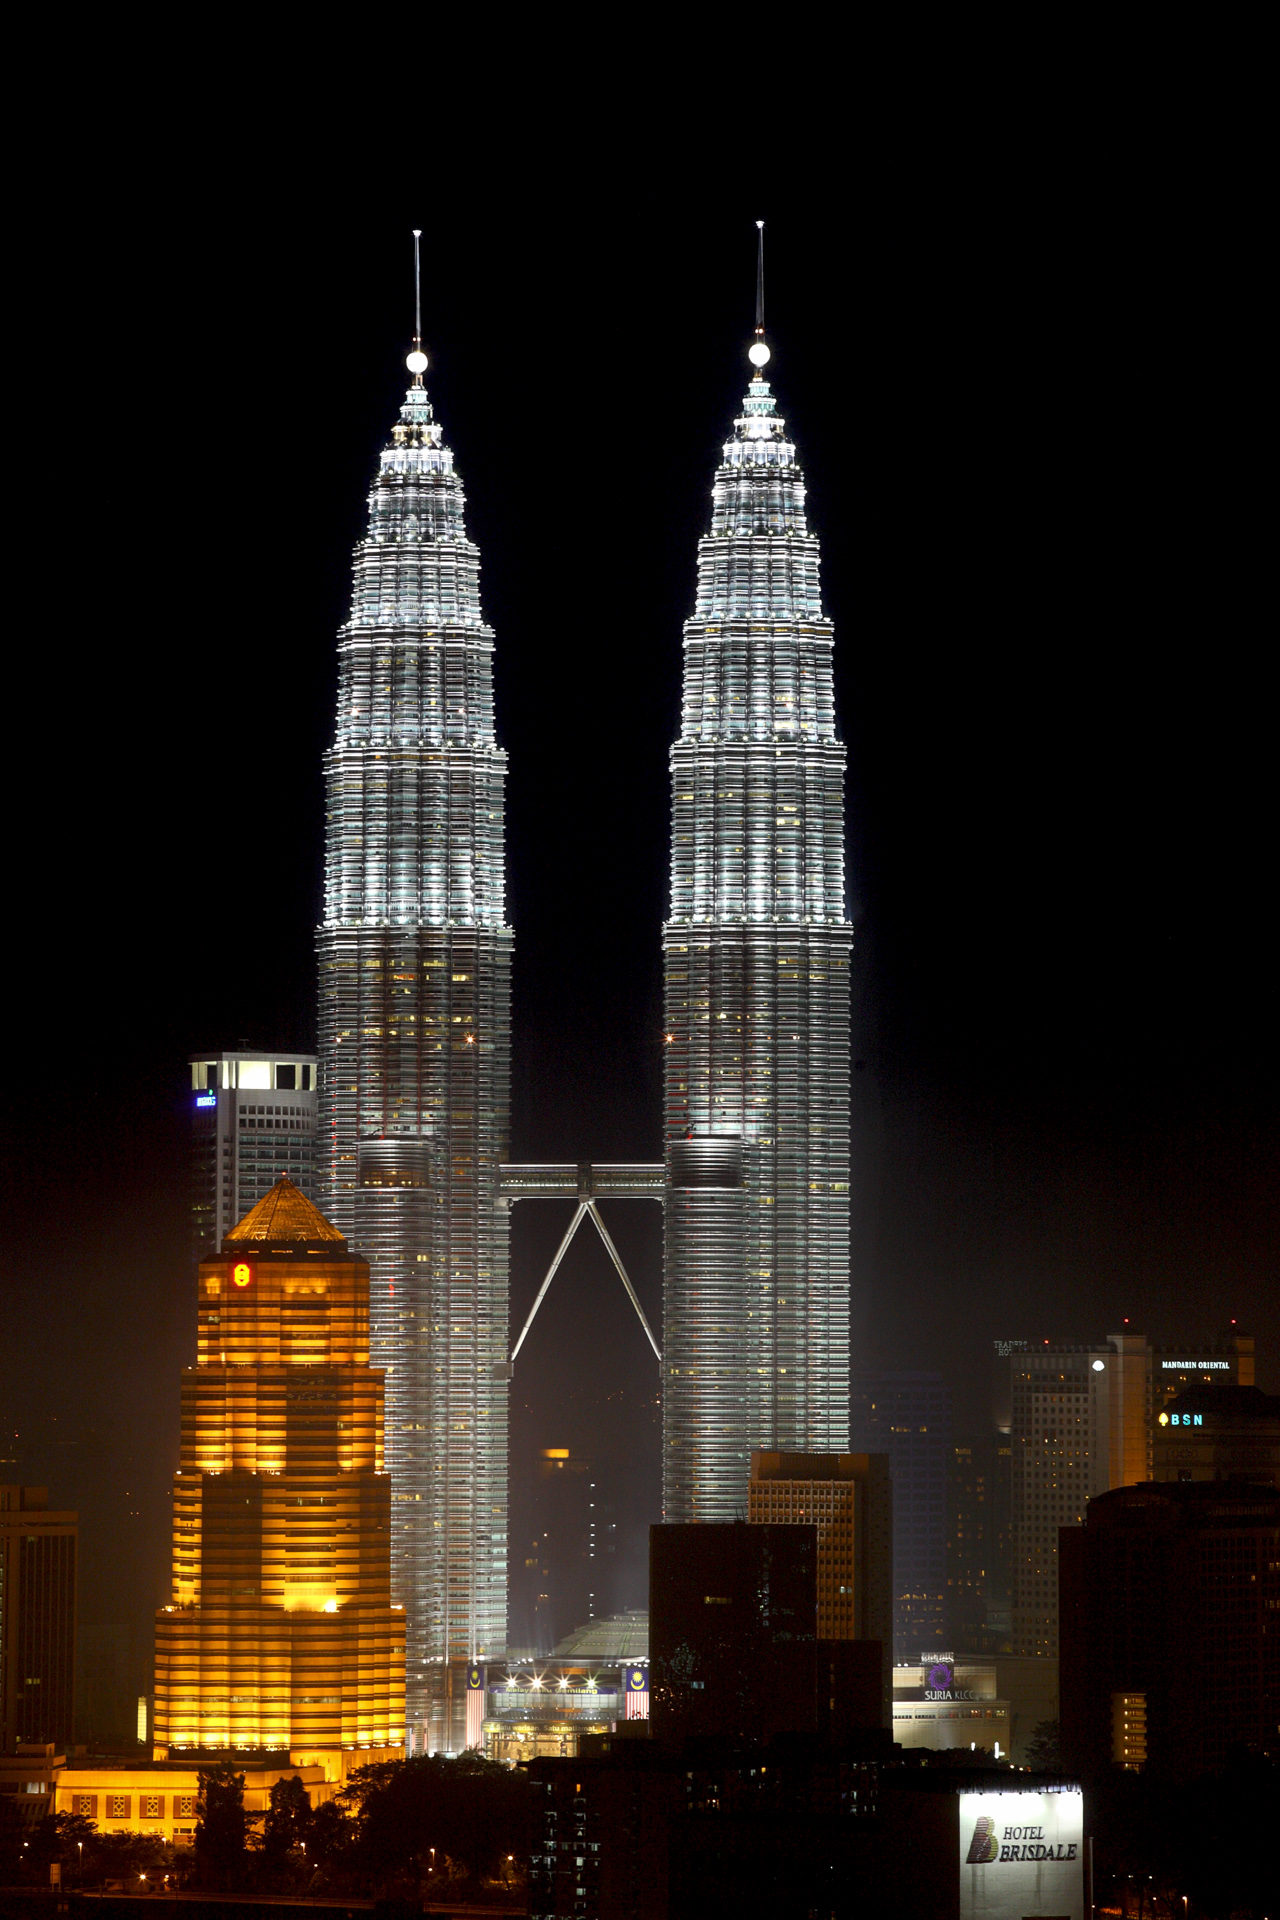 Malezja, Petronas Towers - fotografia nocna - architektura współczesna